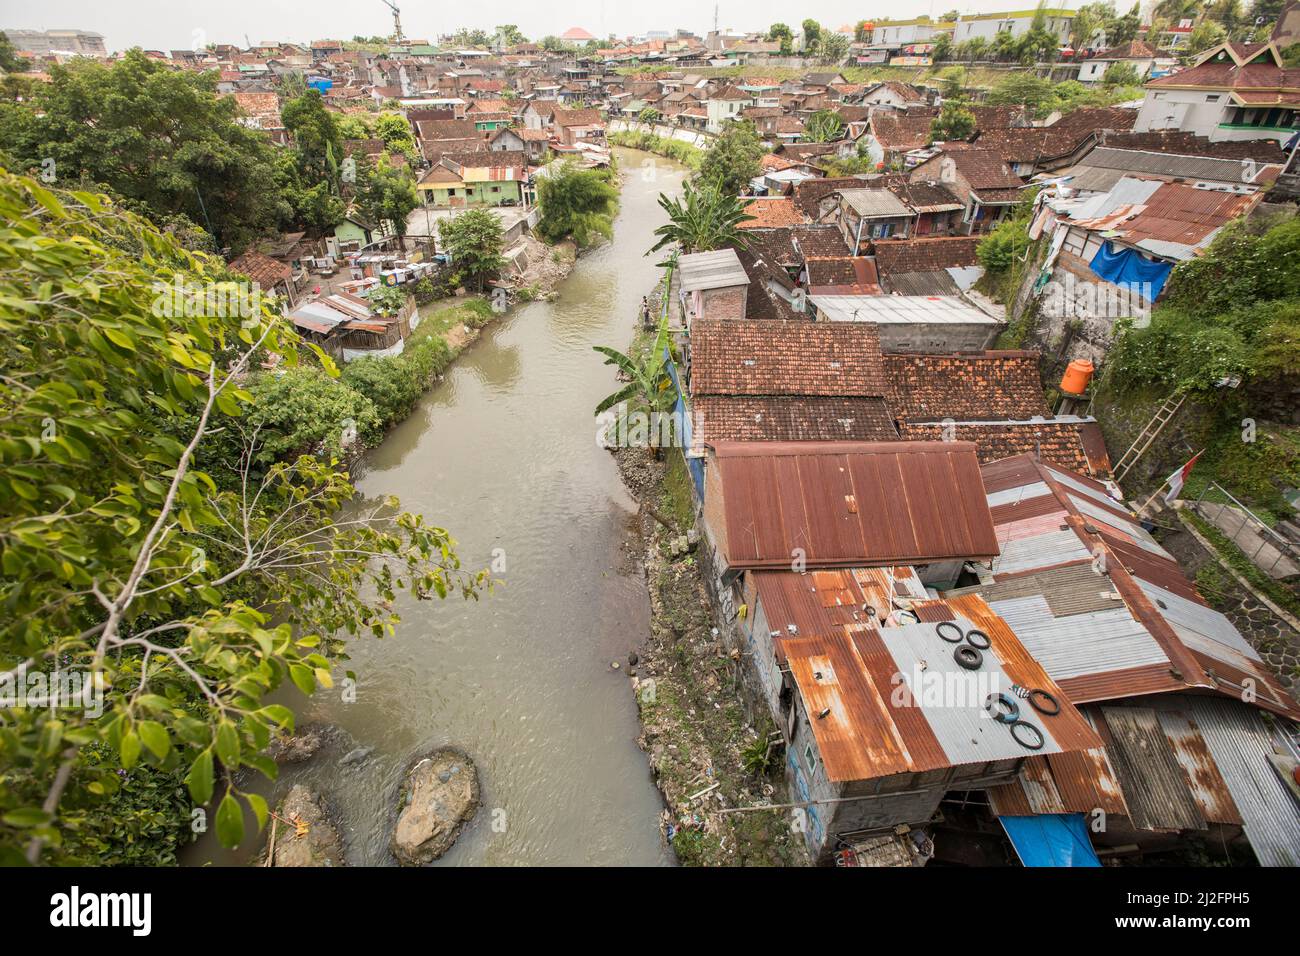 Affollate e colorate abitazioni di slum si trovano lungo un canale di drenaggio delle acque reflue a Yogyakarta (Jogjakarta), la seconda città più grande dell’Indonesia. Foto Stock